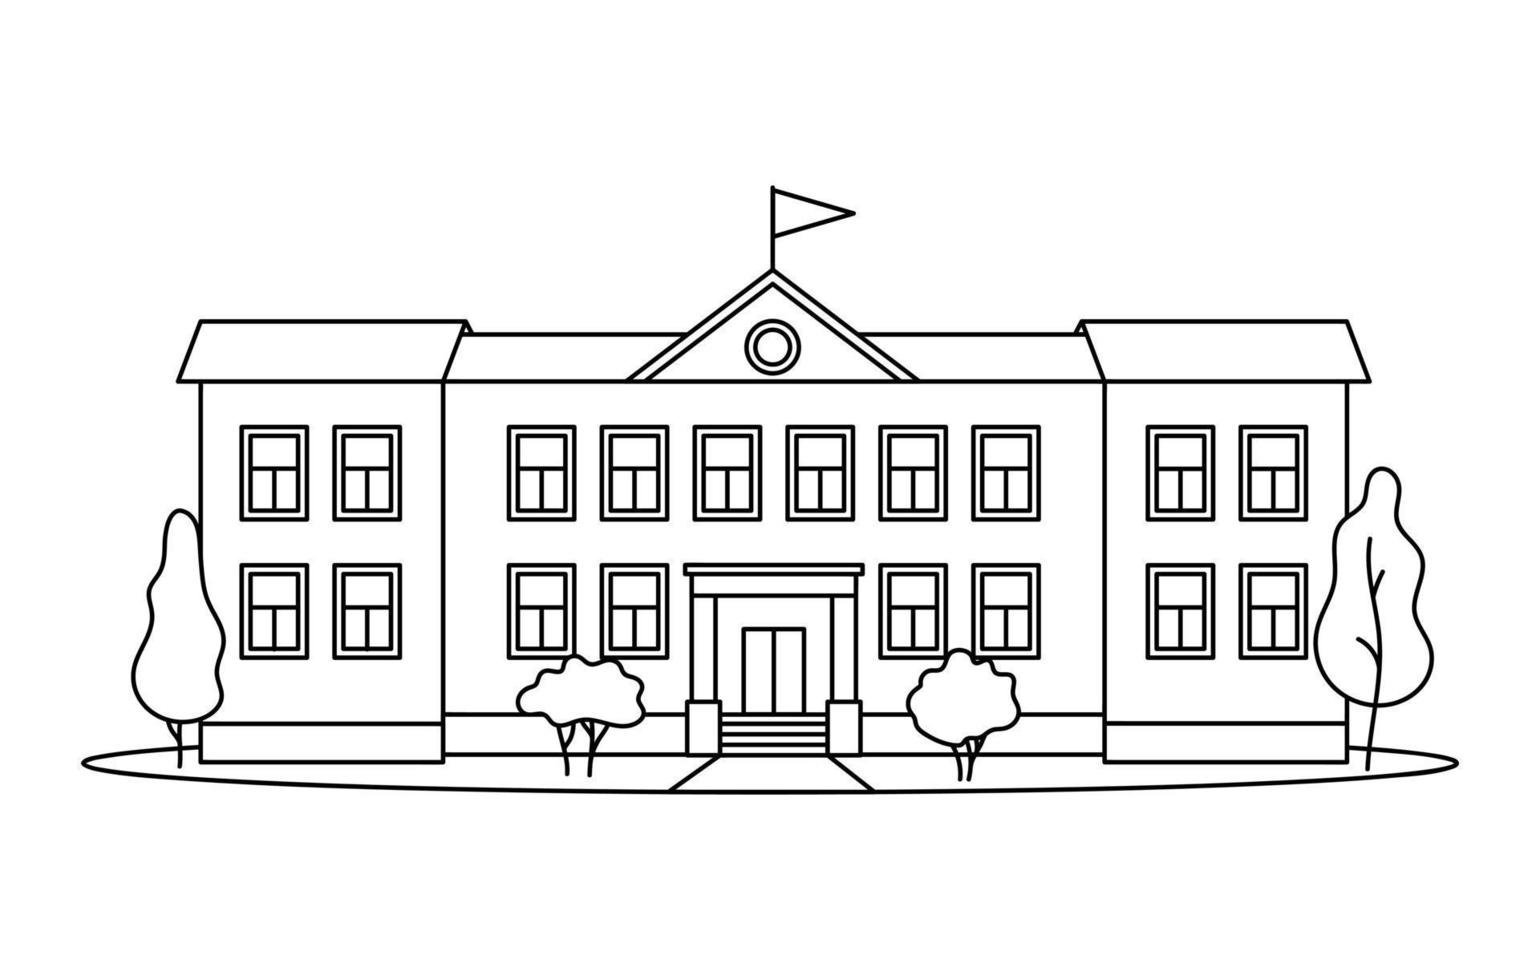 prédio da escola clássica com colunas para crianças ou aluno desenhado com linhas pretas de contorno em fundo branco. vetor